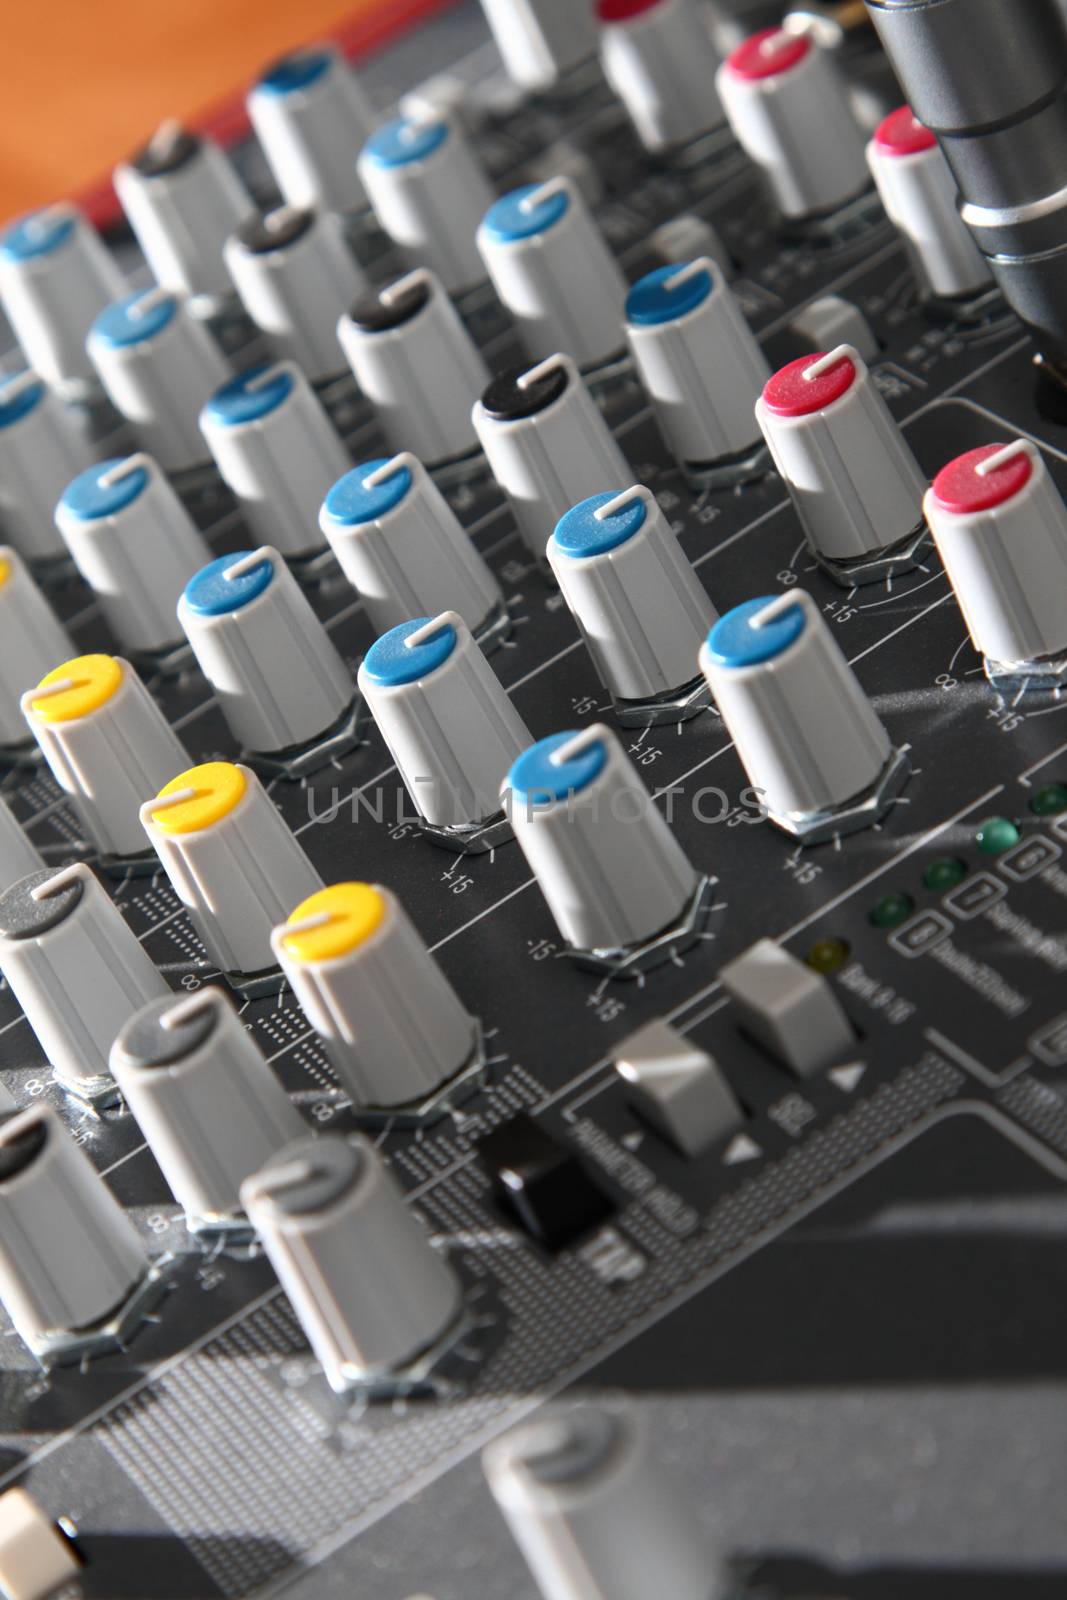 Audio mixer equipment by Garsya